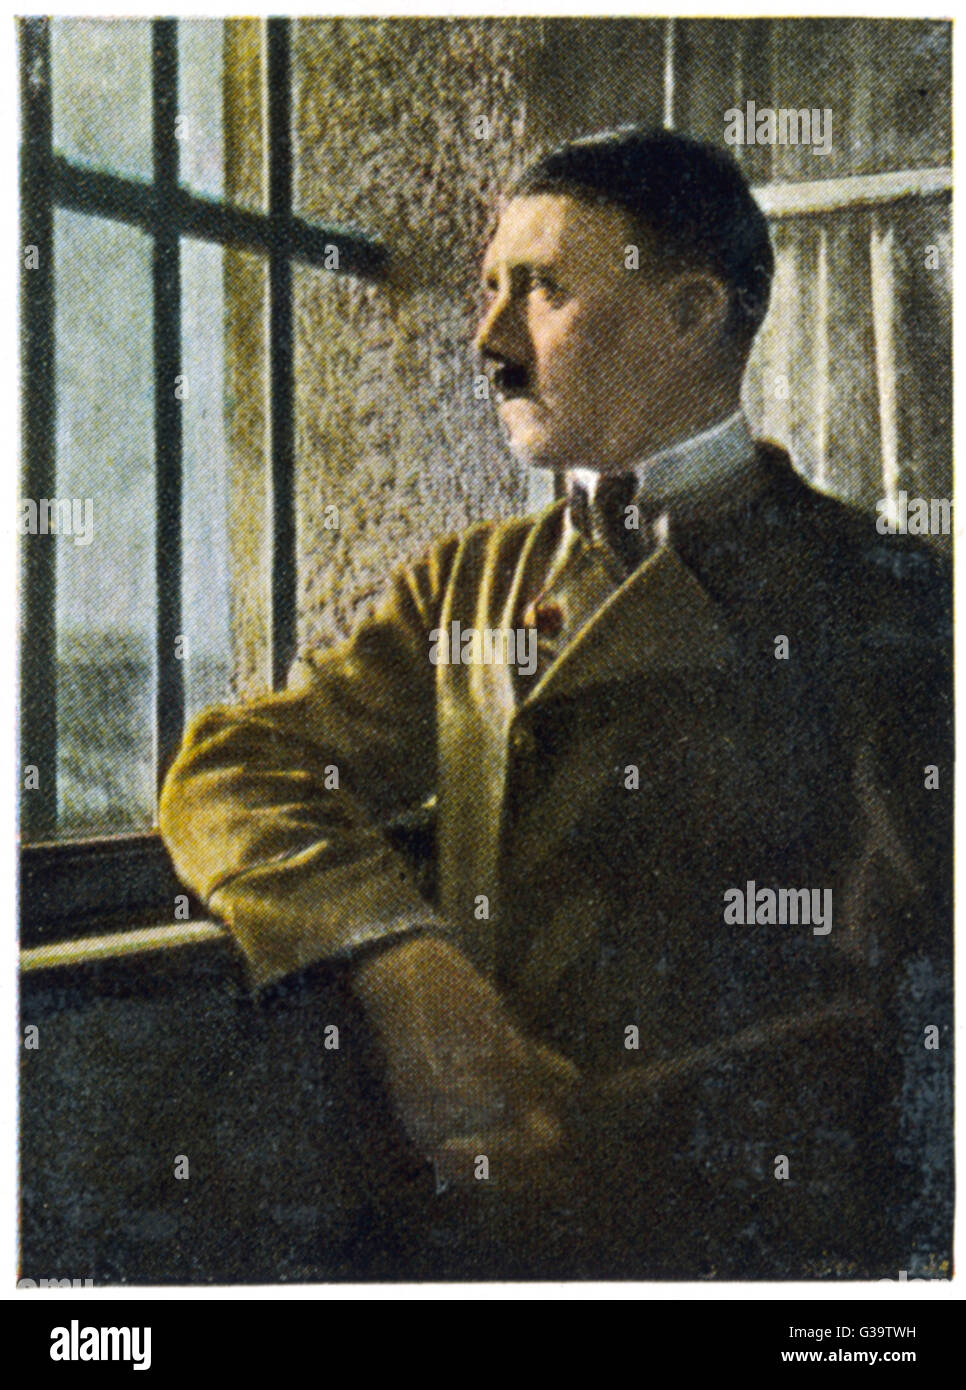 ADOLF HITLER In Festung Landsberg dopo il fallito golpe nel 1923 Data: 1889 - 1945 Foto Stock